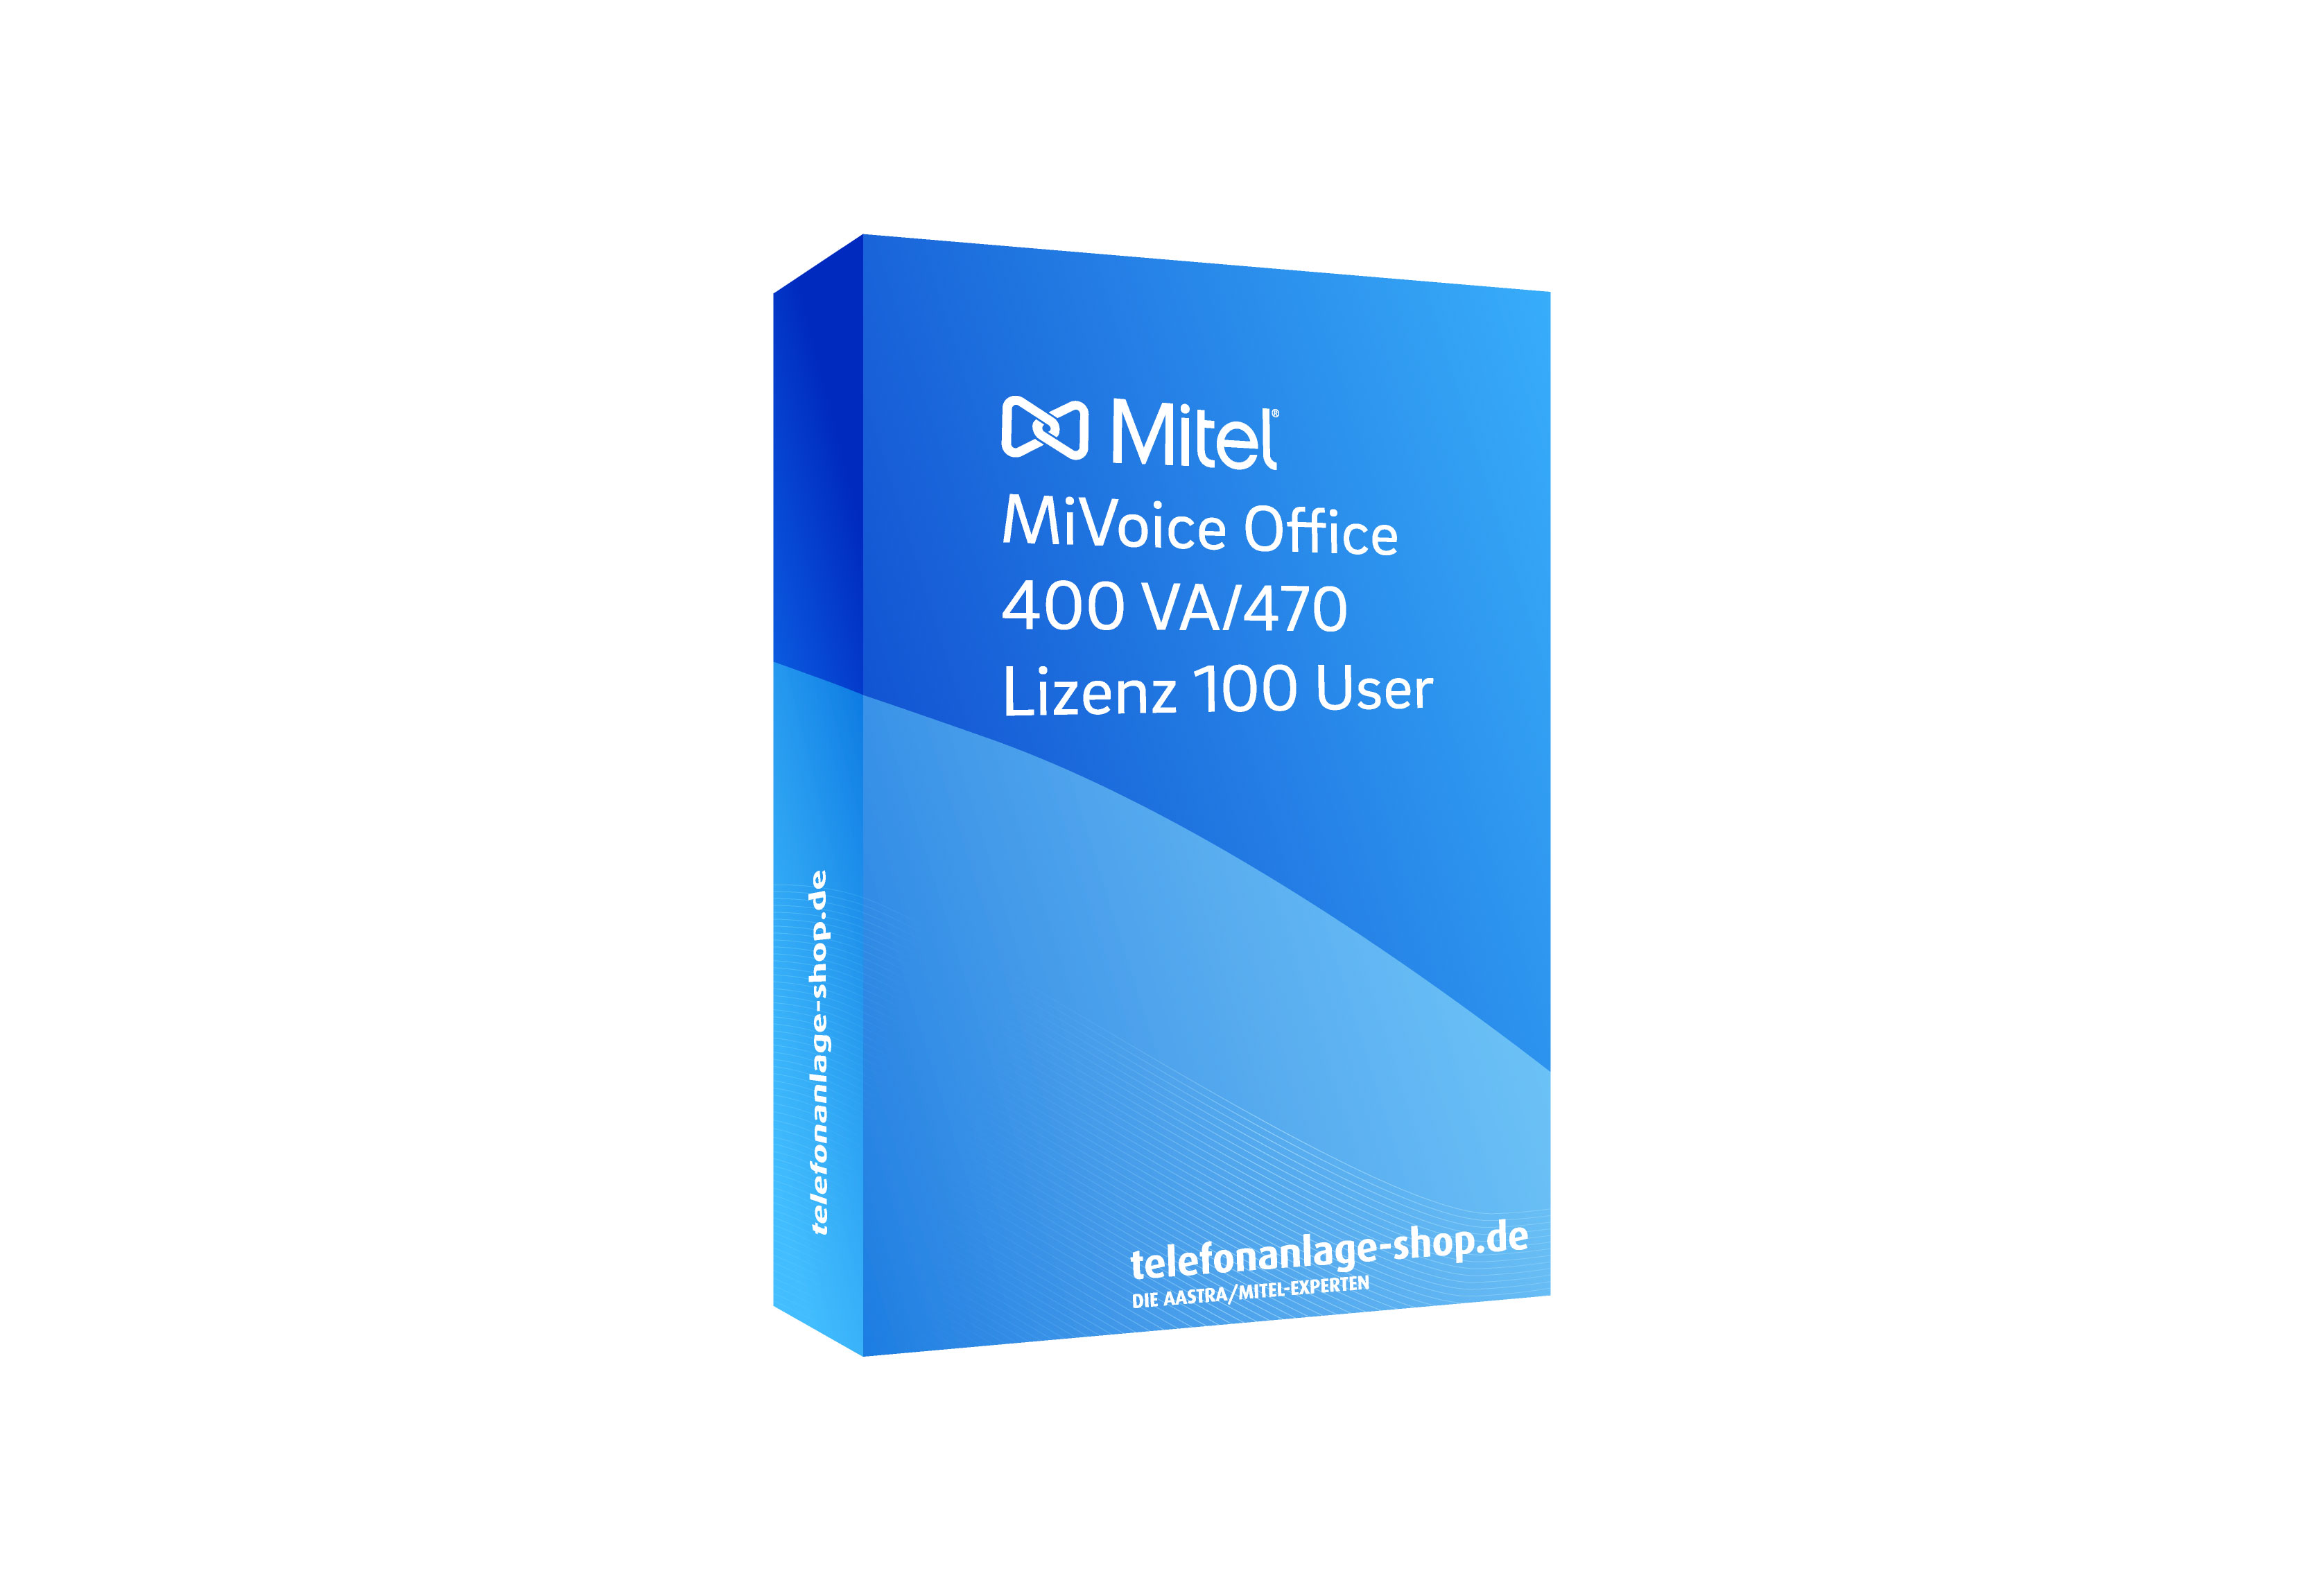 Produktbild - Mitel MiVoice Office 400 VA/470 100 User